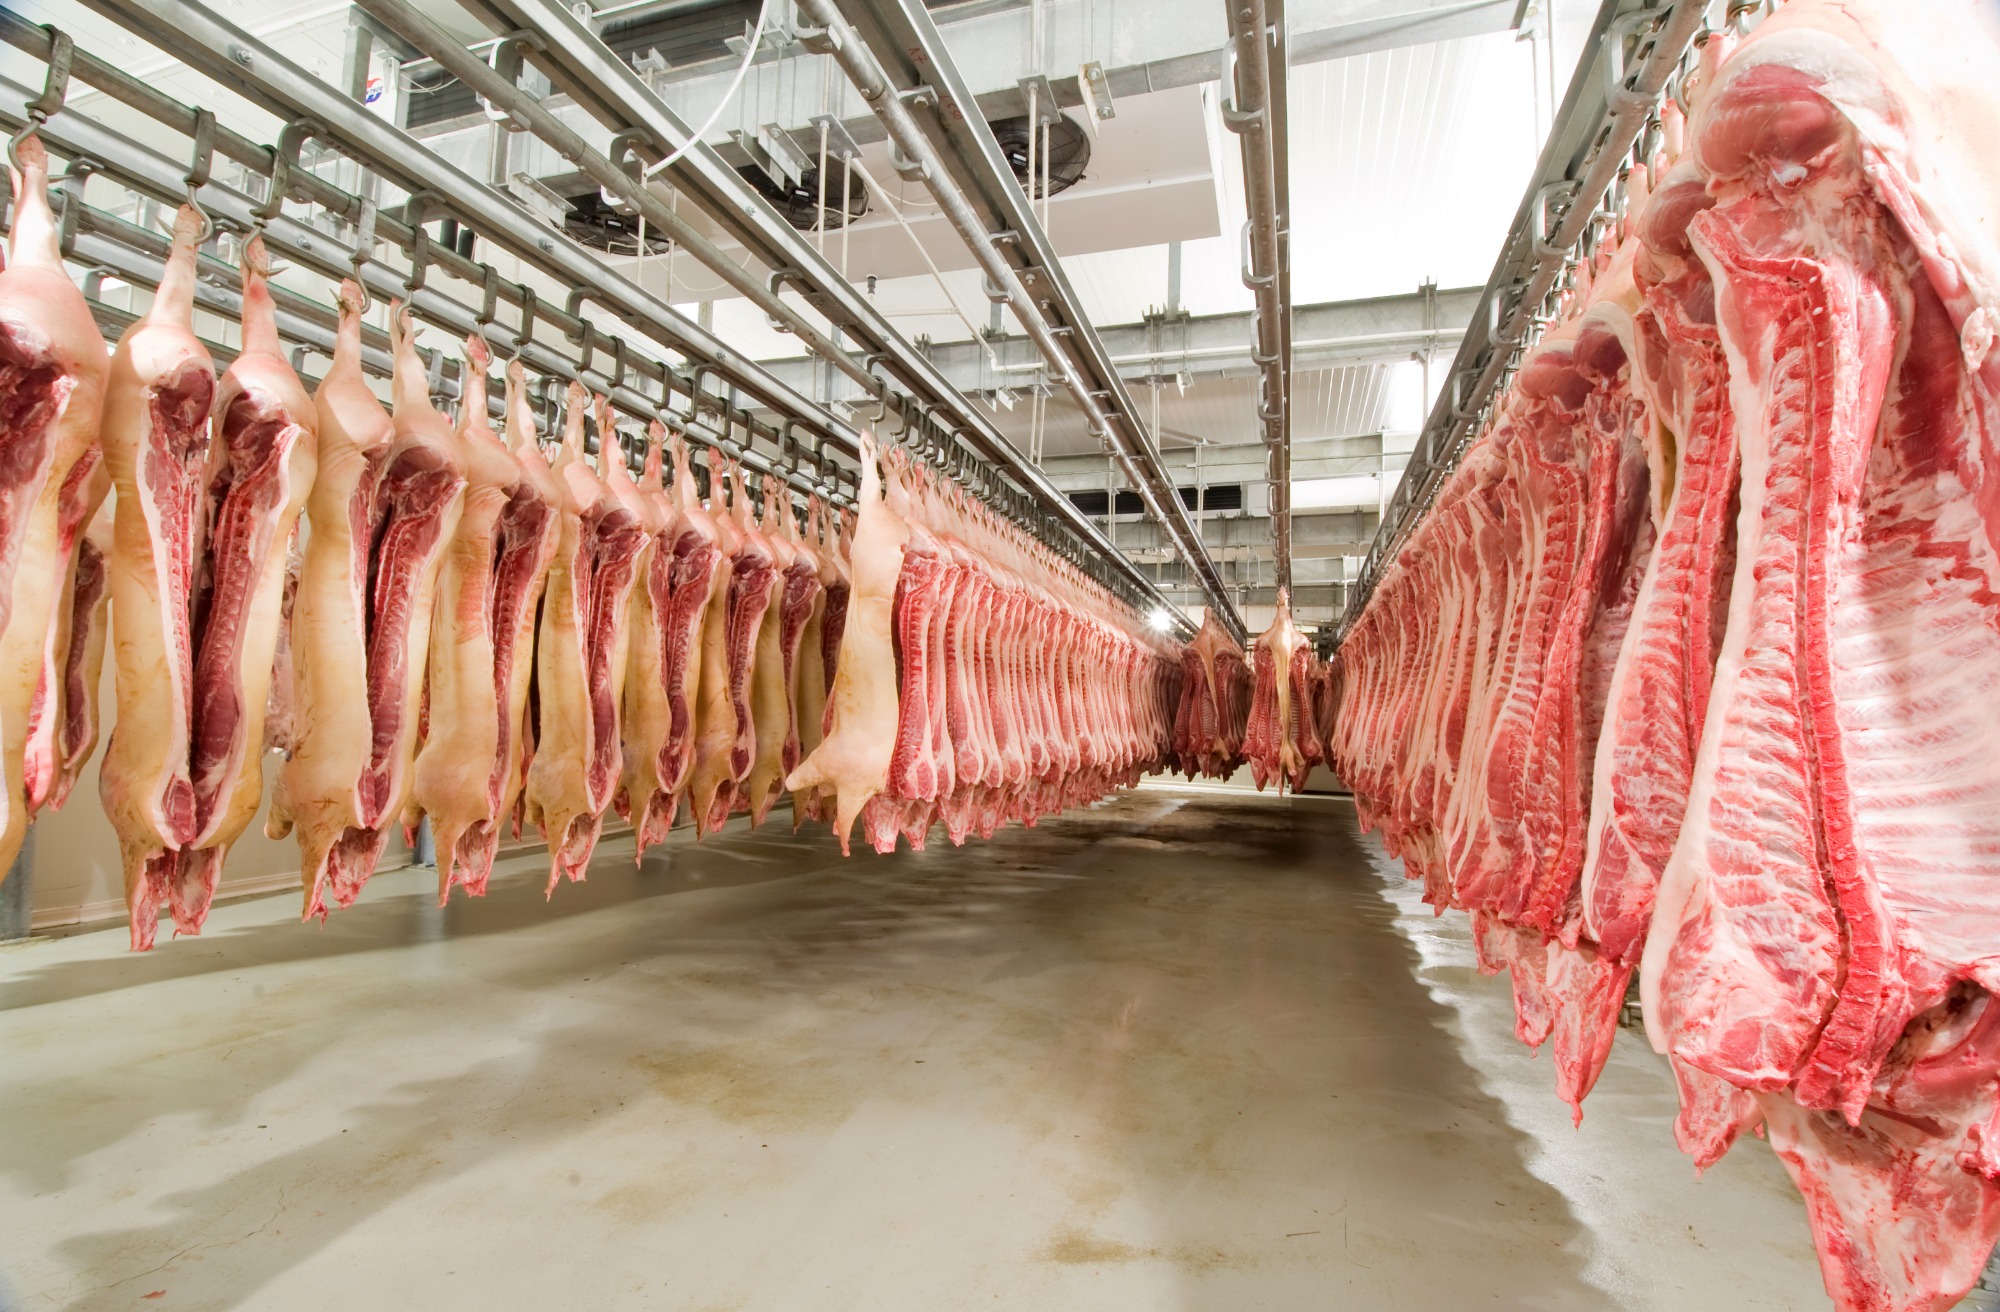 Volume exportado de carne bovina atinge 142,6 mil toneladas, mas preços médios recuam no comparativo semanal